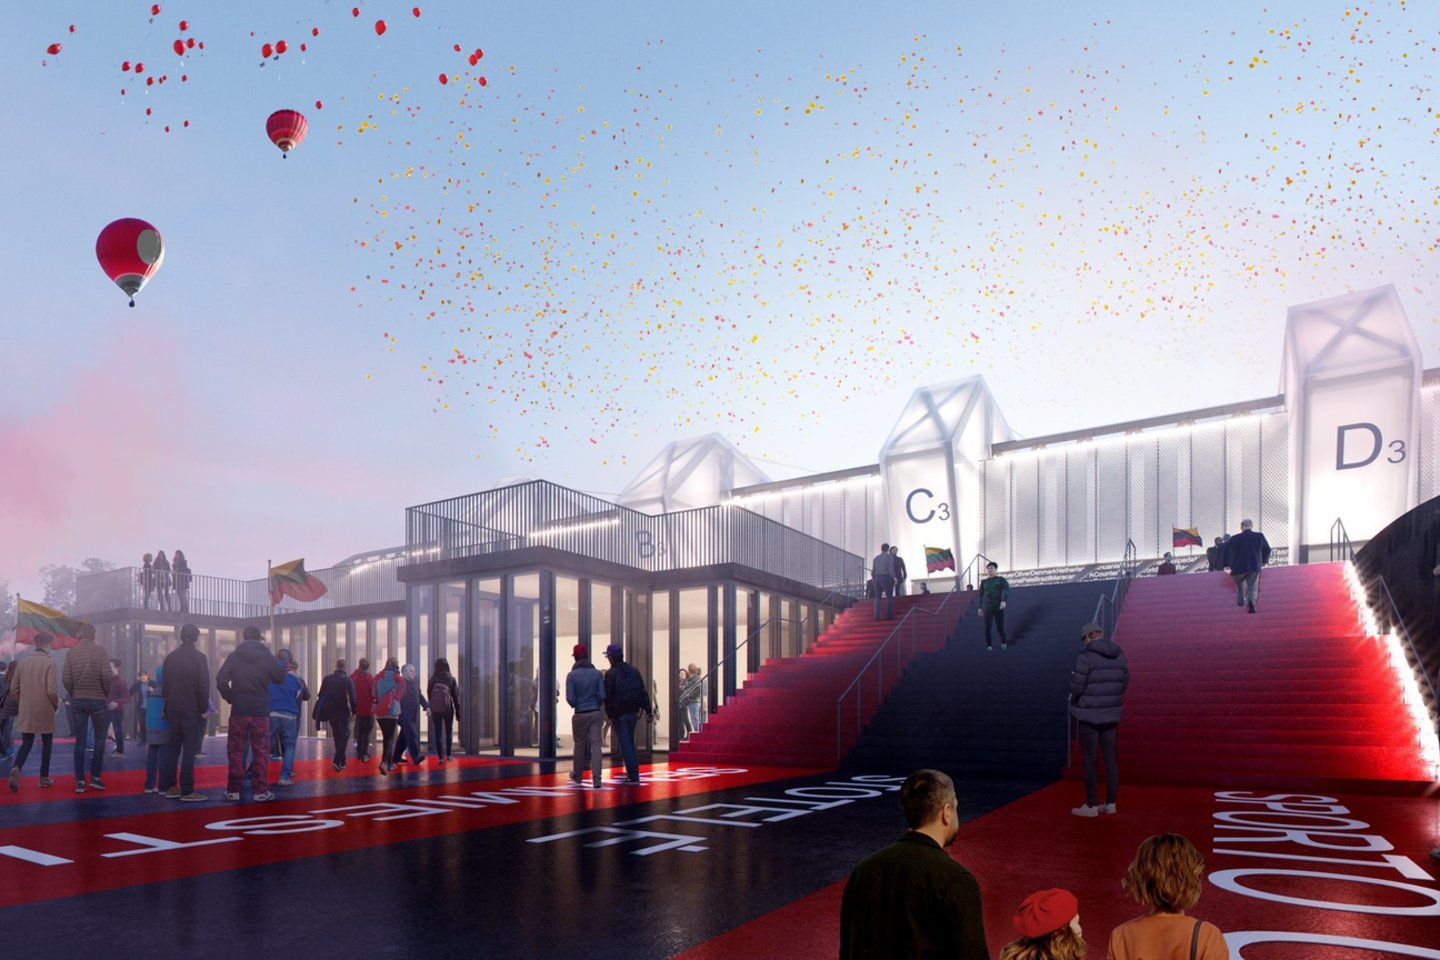 Projekto koncesininko „Axis Industries“ partneriai „Cloud architektai“ parengė naujas stadiono vizualizacijas.<br>vizual.